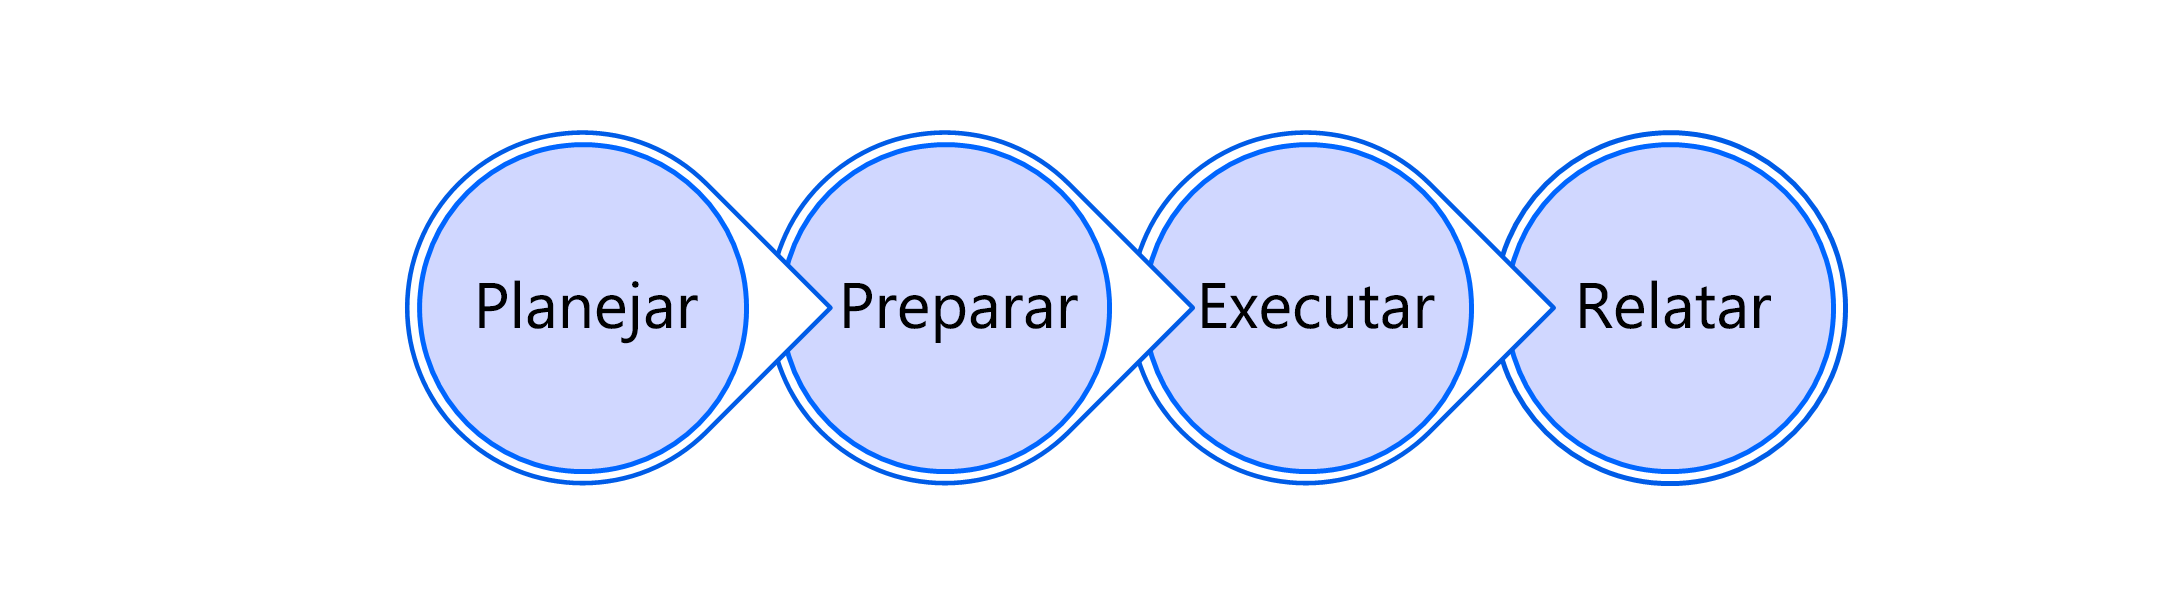 Diagrama do processo de teste de planejamento, preparação, execução e relatório.